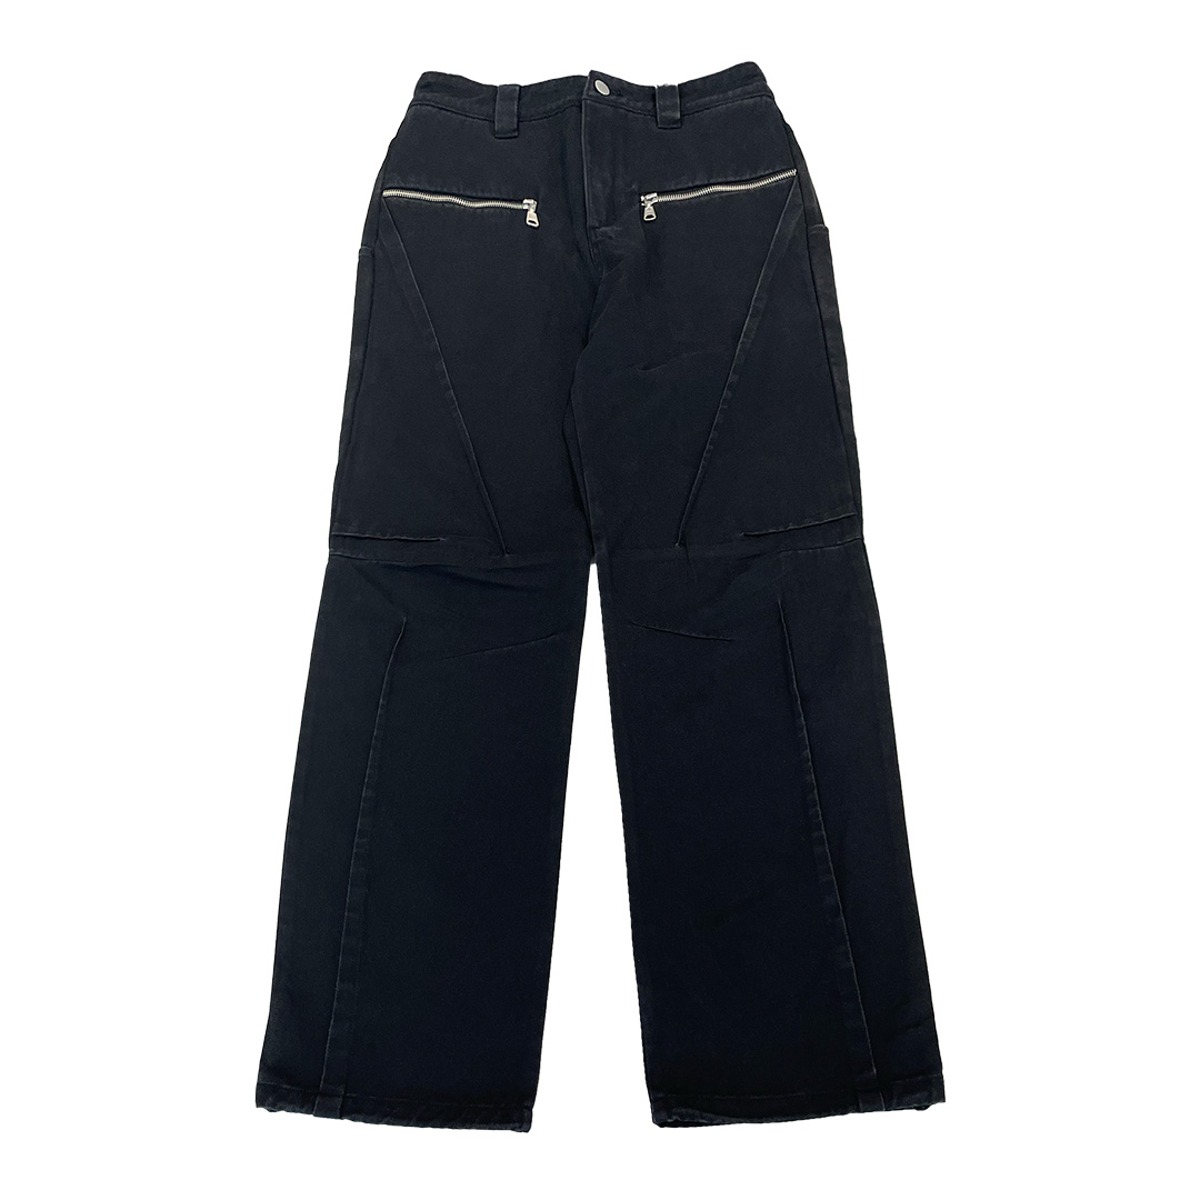 TCM slash pants (black) (6/14 예약배송)